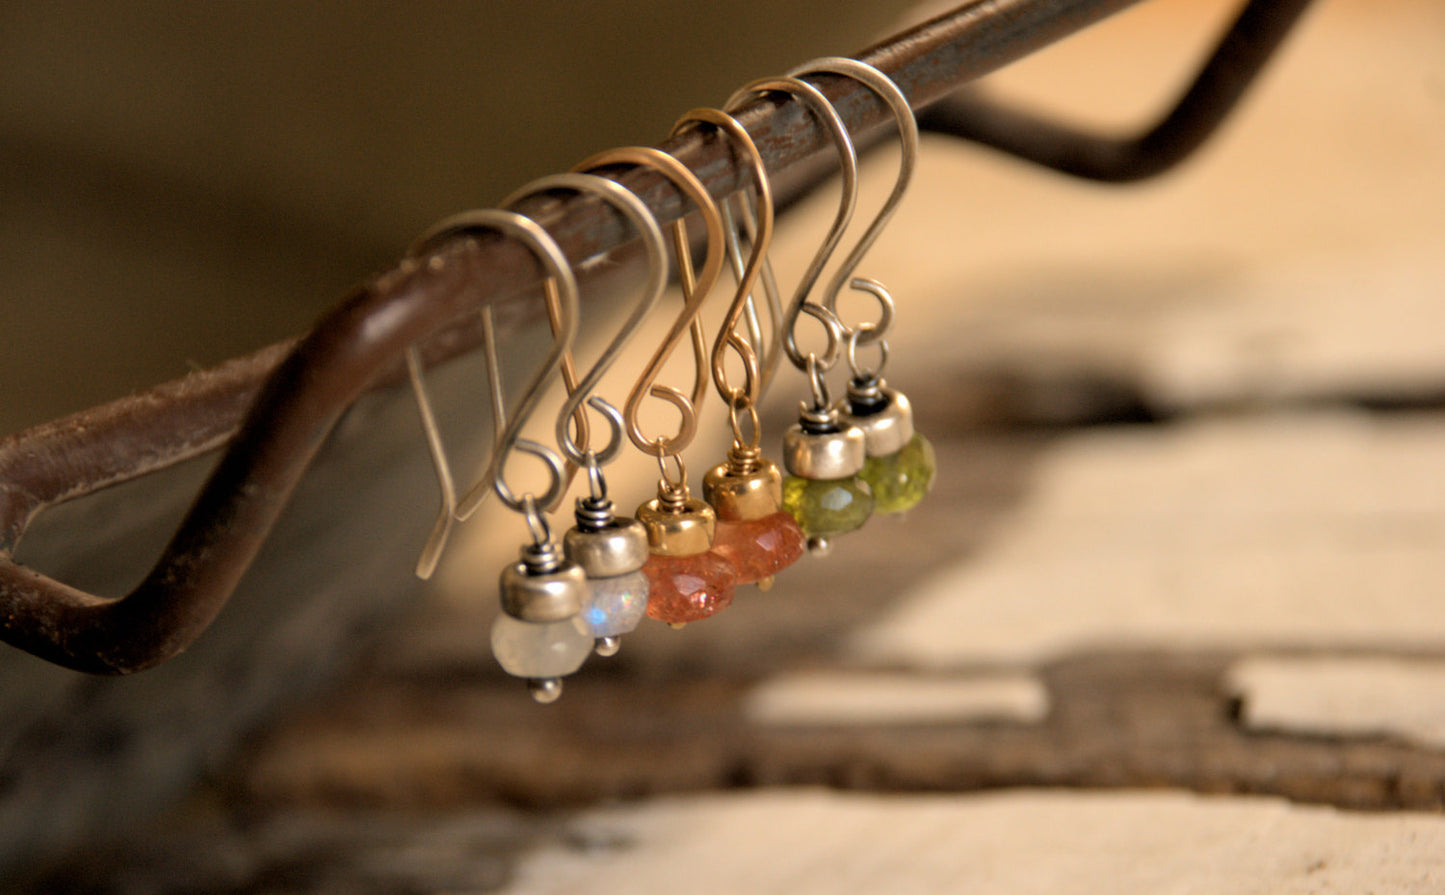 Dandy Earrings in Ice -  Moonstone. Oxidized Sterling silver. Dangle earrings.Handmade